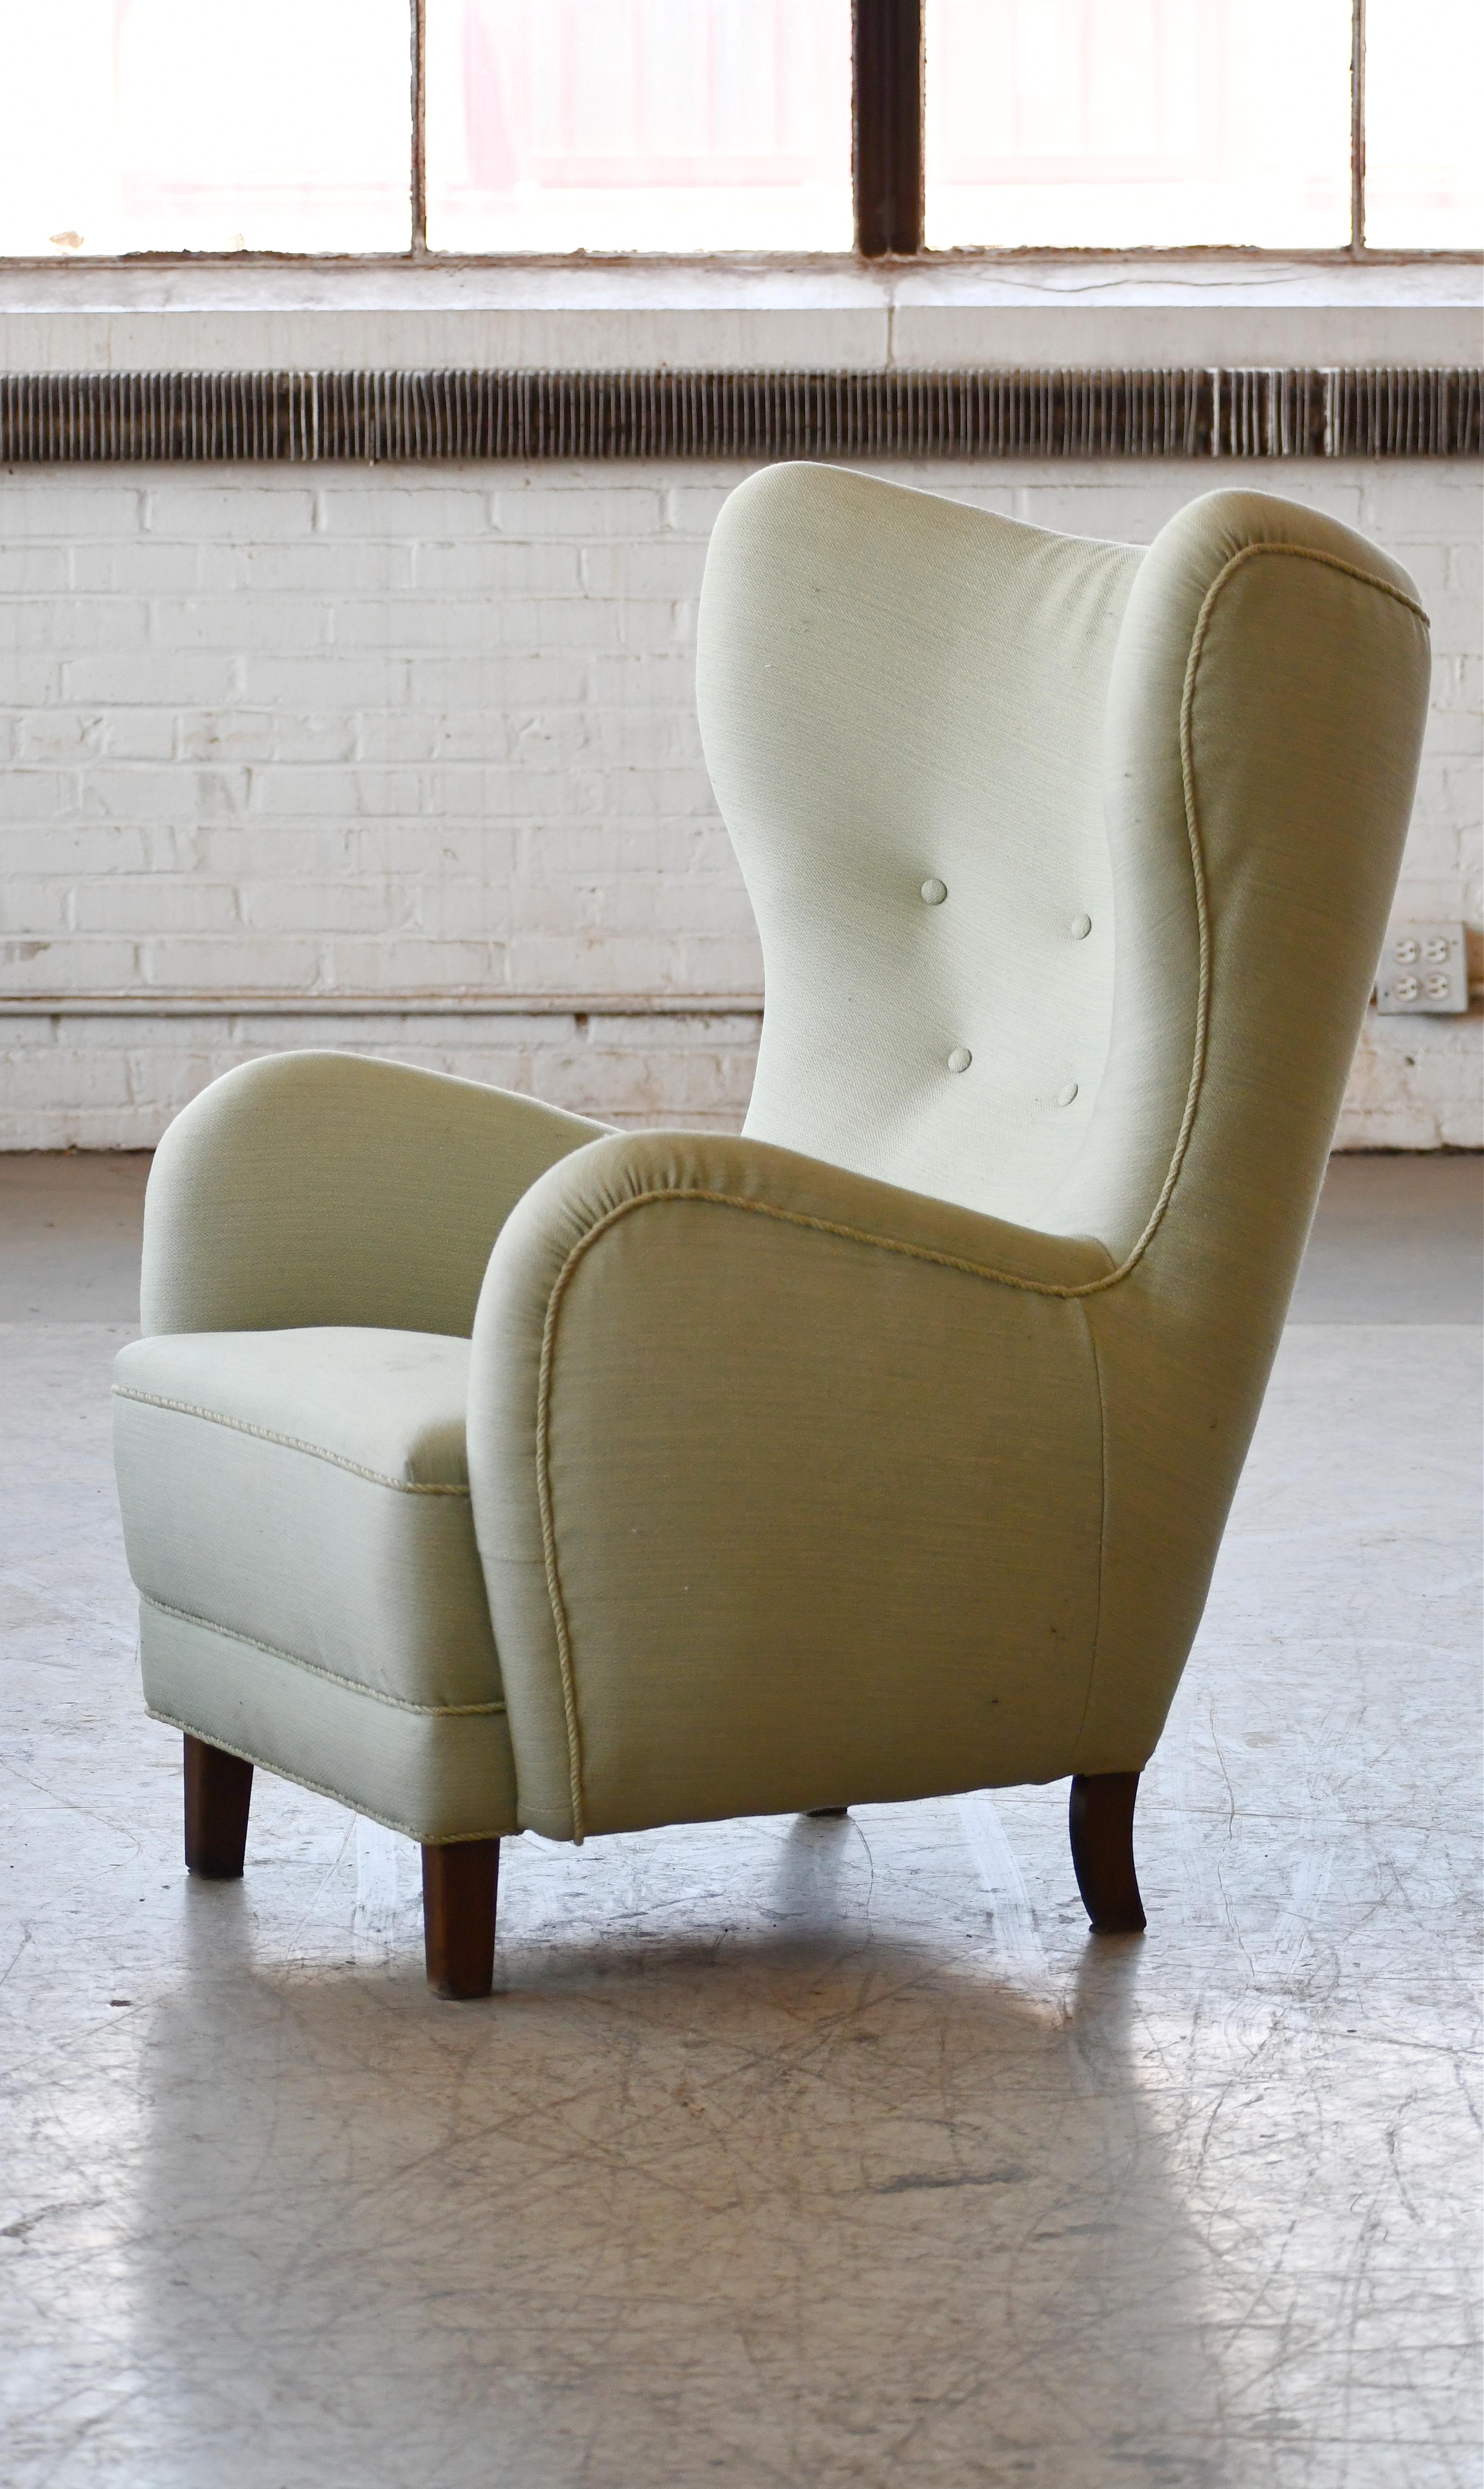 Magnifique chaise longue à haut dossier attribuée à Flemming Lassen, fabriquée vers 1940. Cette chaise longue iconique est probablement l'un des dossiers hauts les plus parfaits jamais conçus. Une pièce parfaite avec sa forme sensuelle et